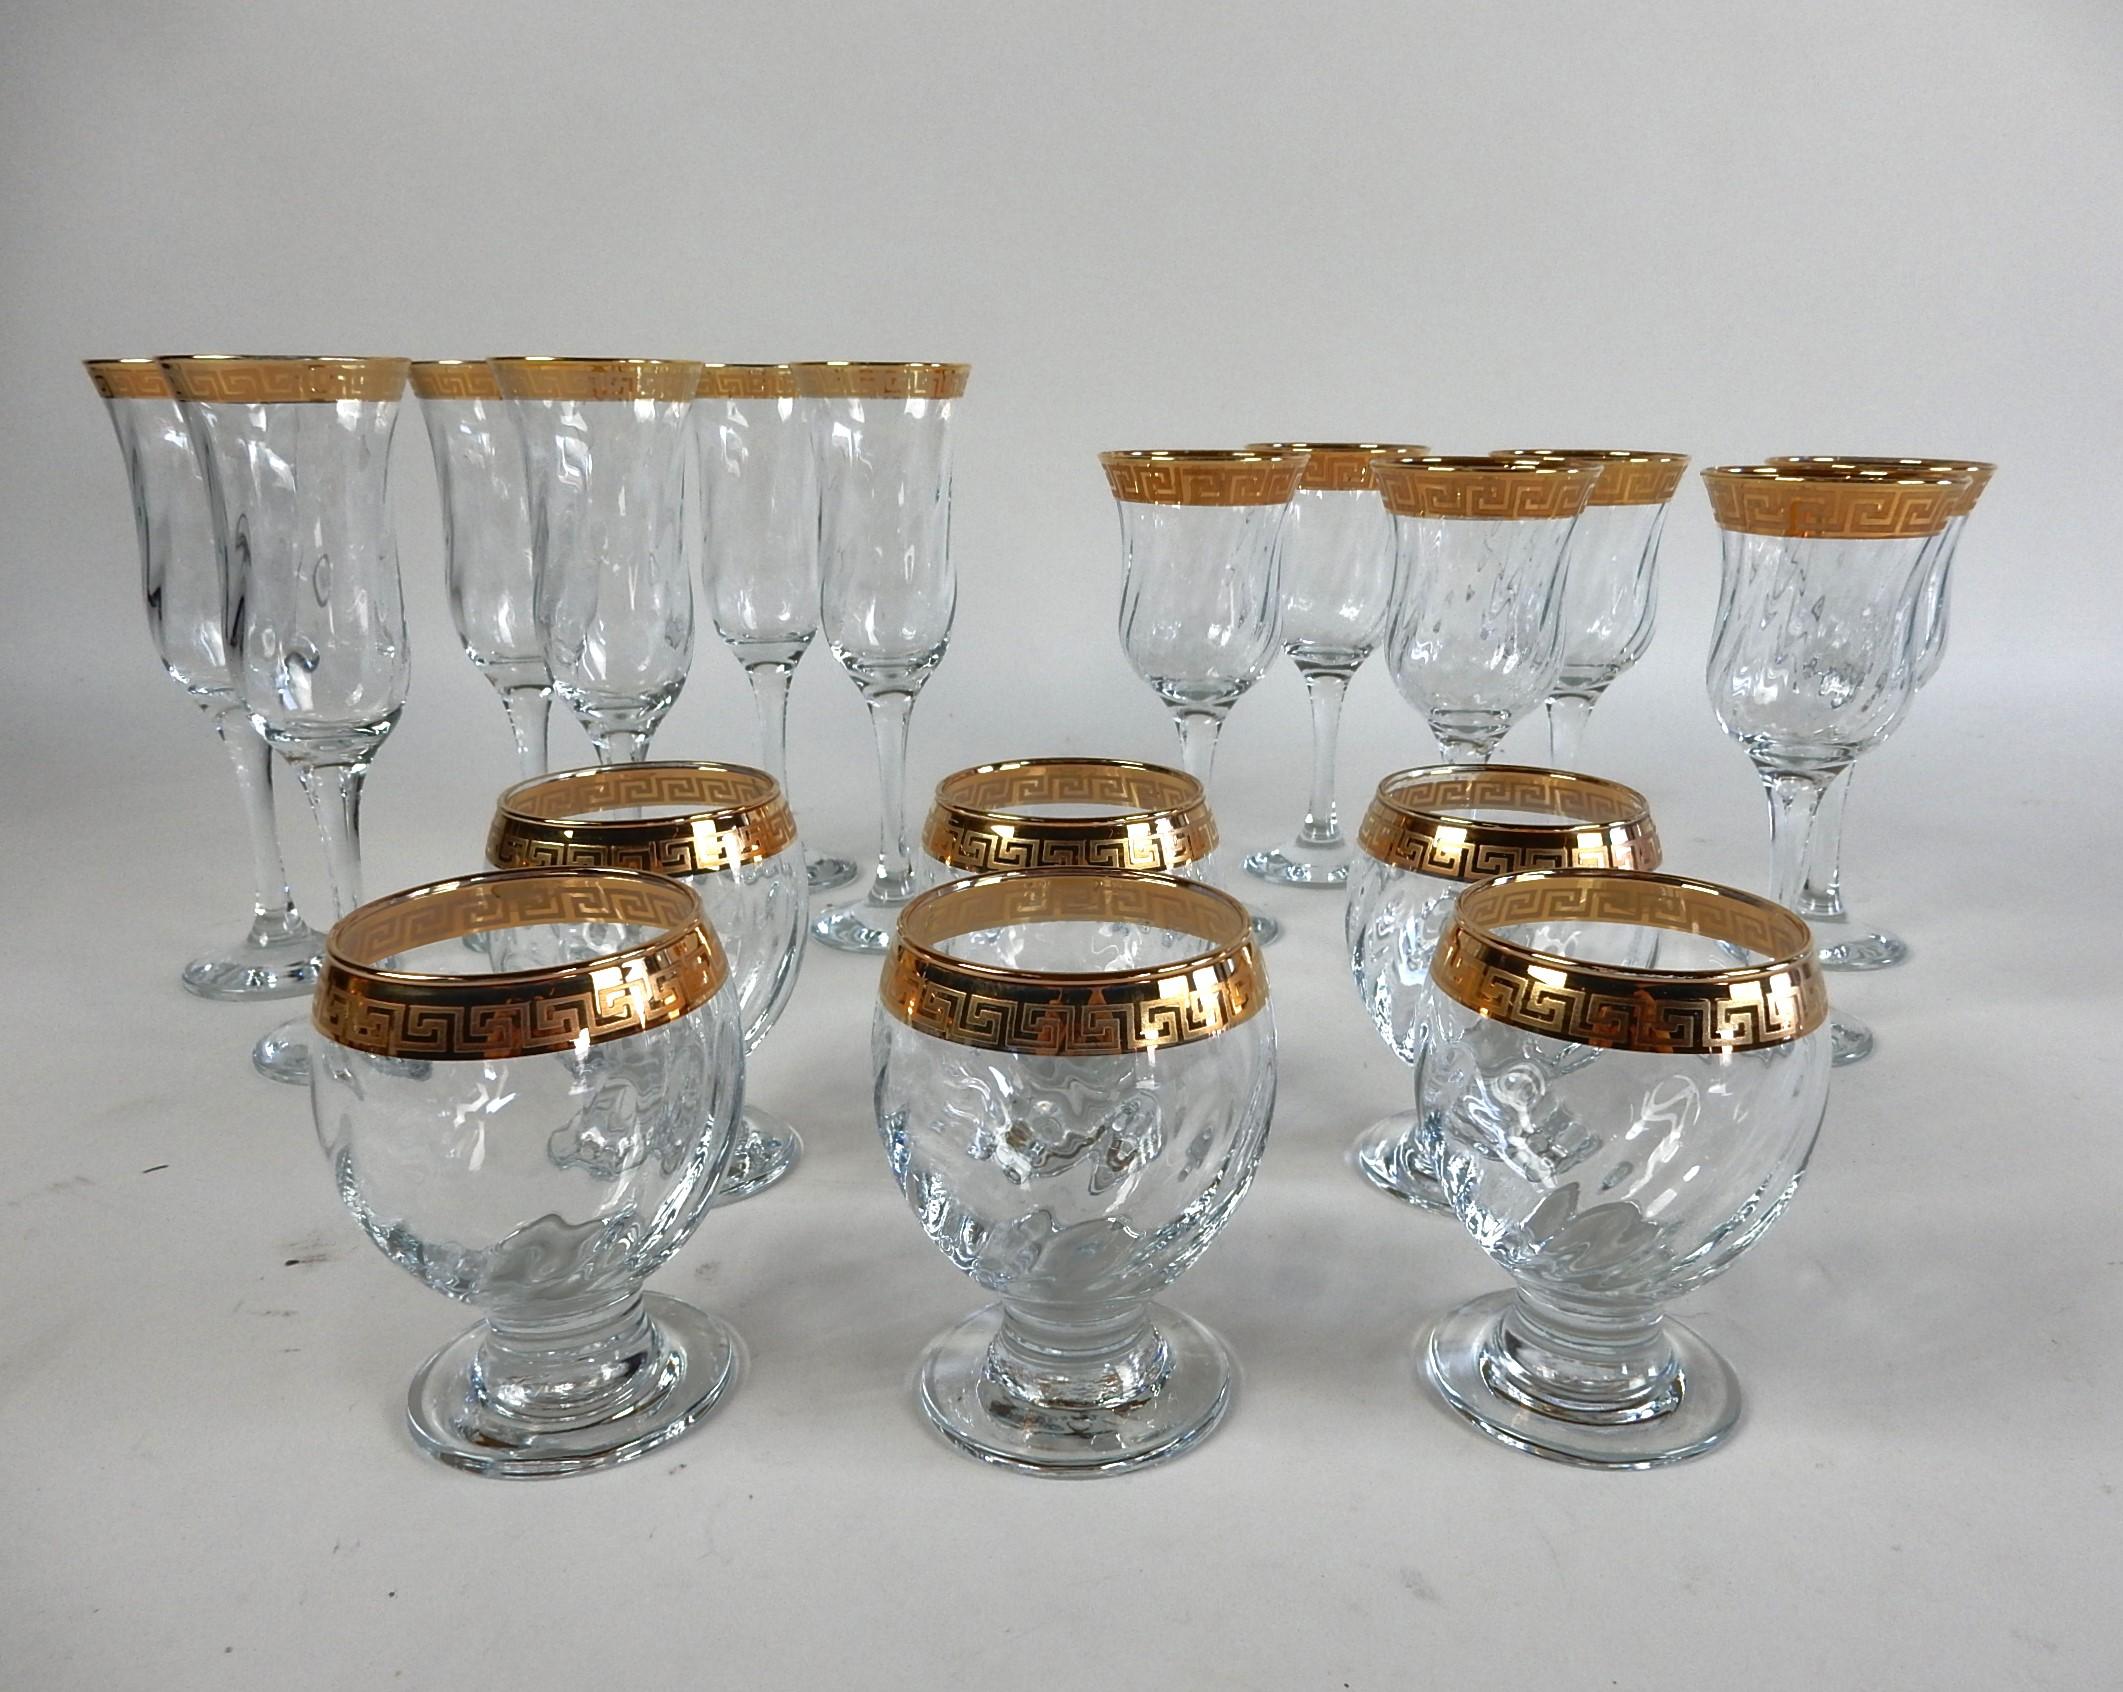 Magnifique ensemble de 18 verres de bar avec
jantes dorées à motif de clé grecque.
6 bouteilles de chaque taille, champagne, vin et glace. 
Sans marque, dans le style de Versace.